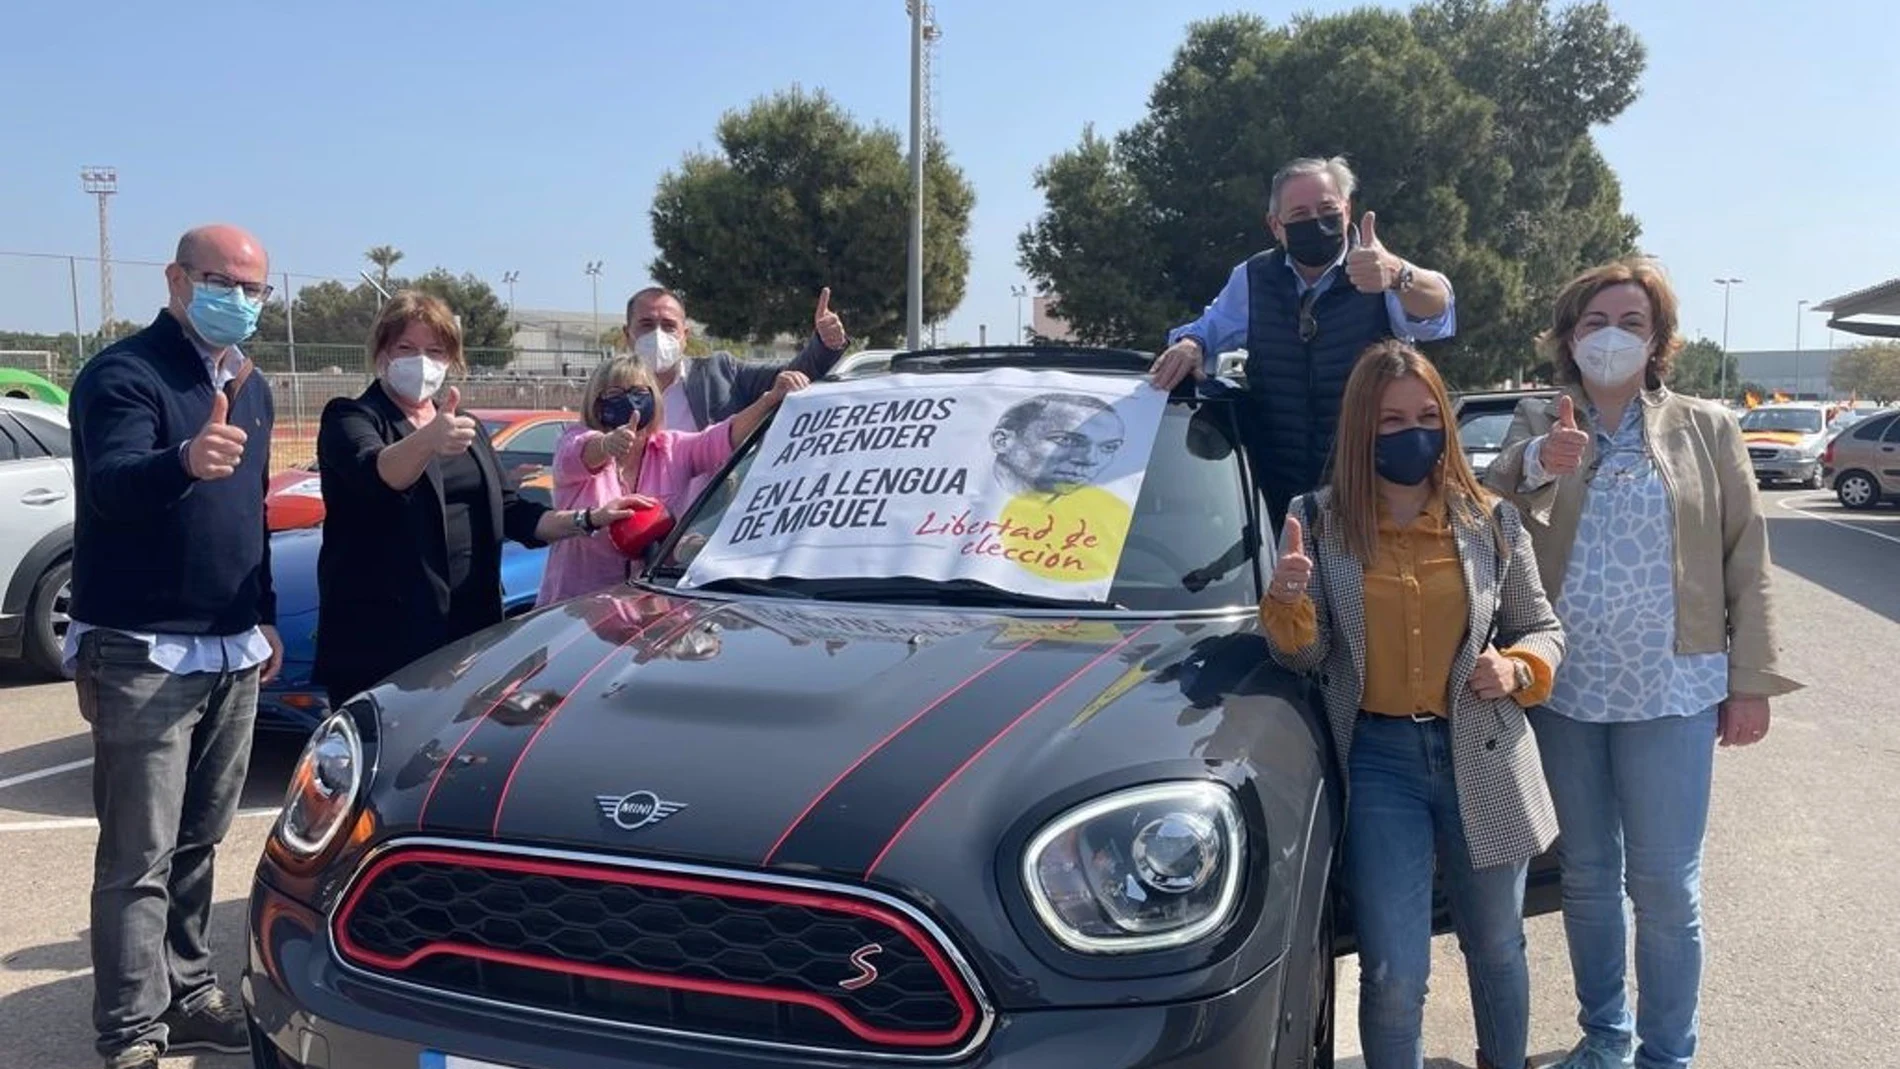 Una caravana de vehículos ha recorrido durante Pilar de la Horadada (Alicante) para exigir la derogación de la Ley de Plurilingüismo